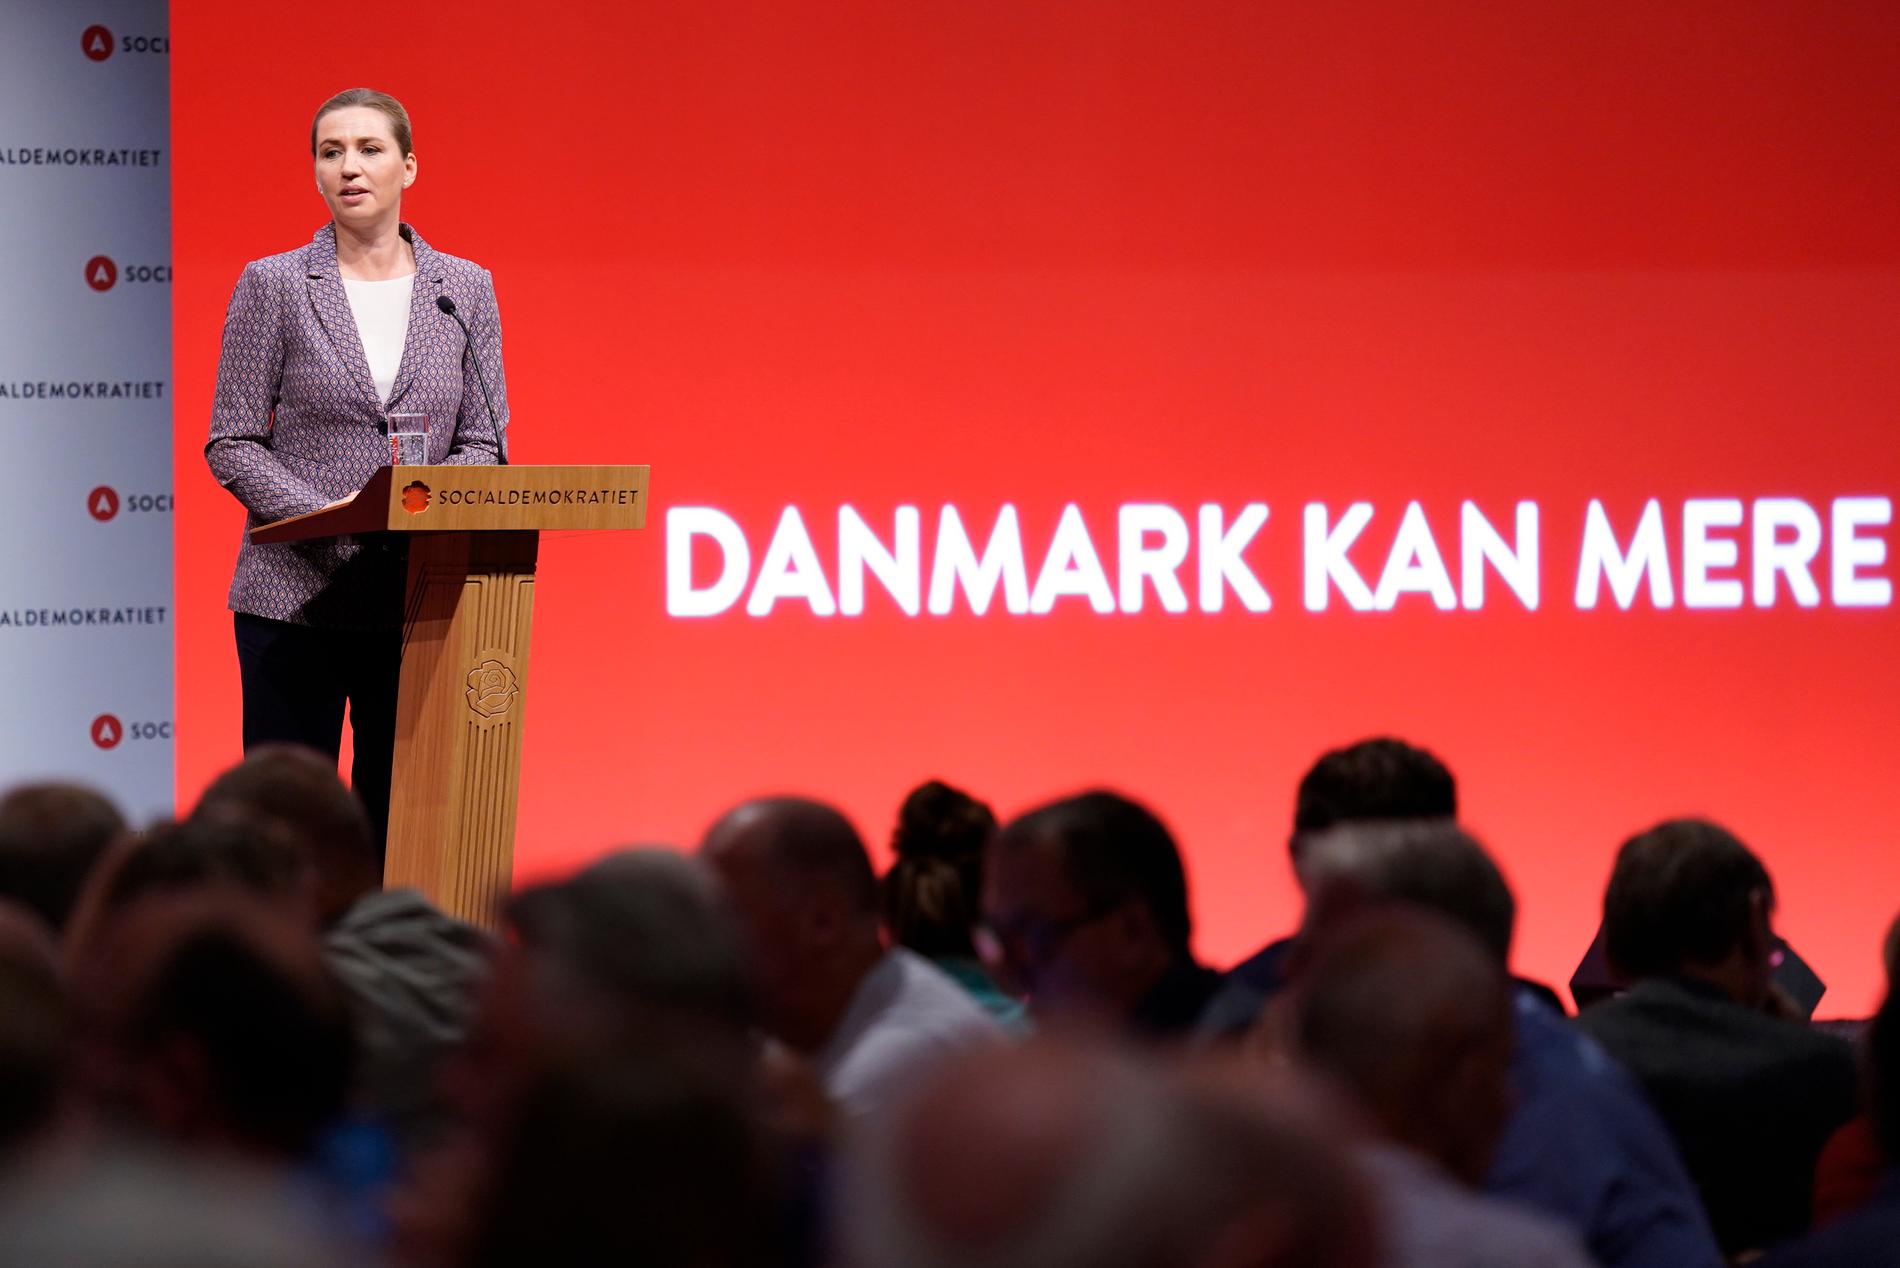 Danmarks statsminister Mette Frederiksen under kongressen på lördagen.